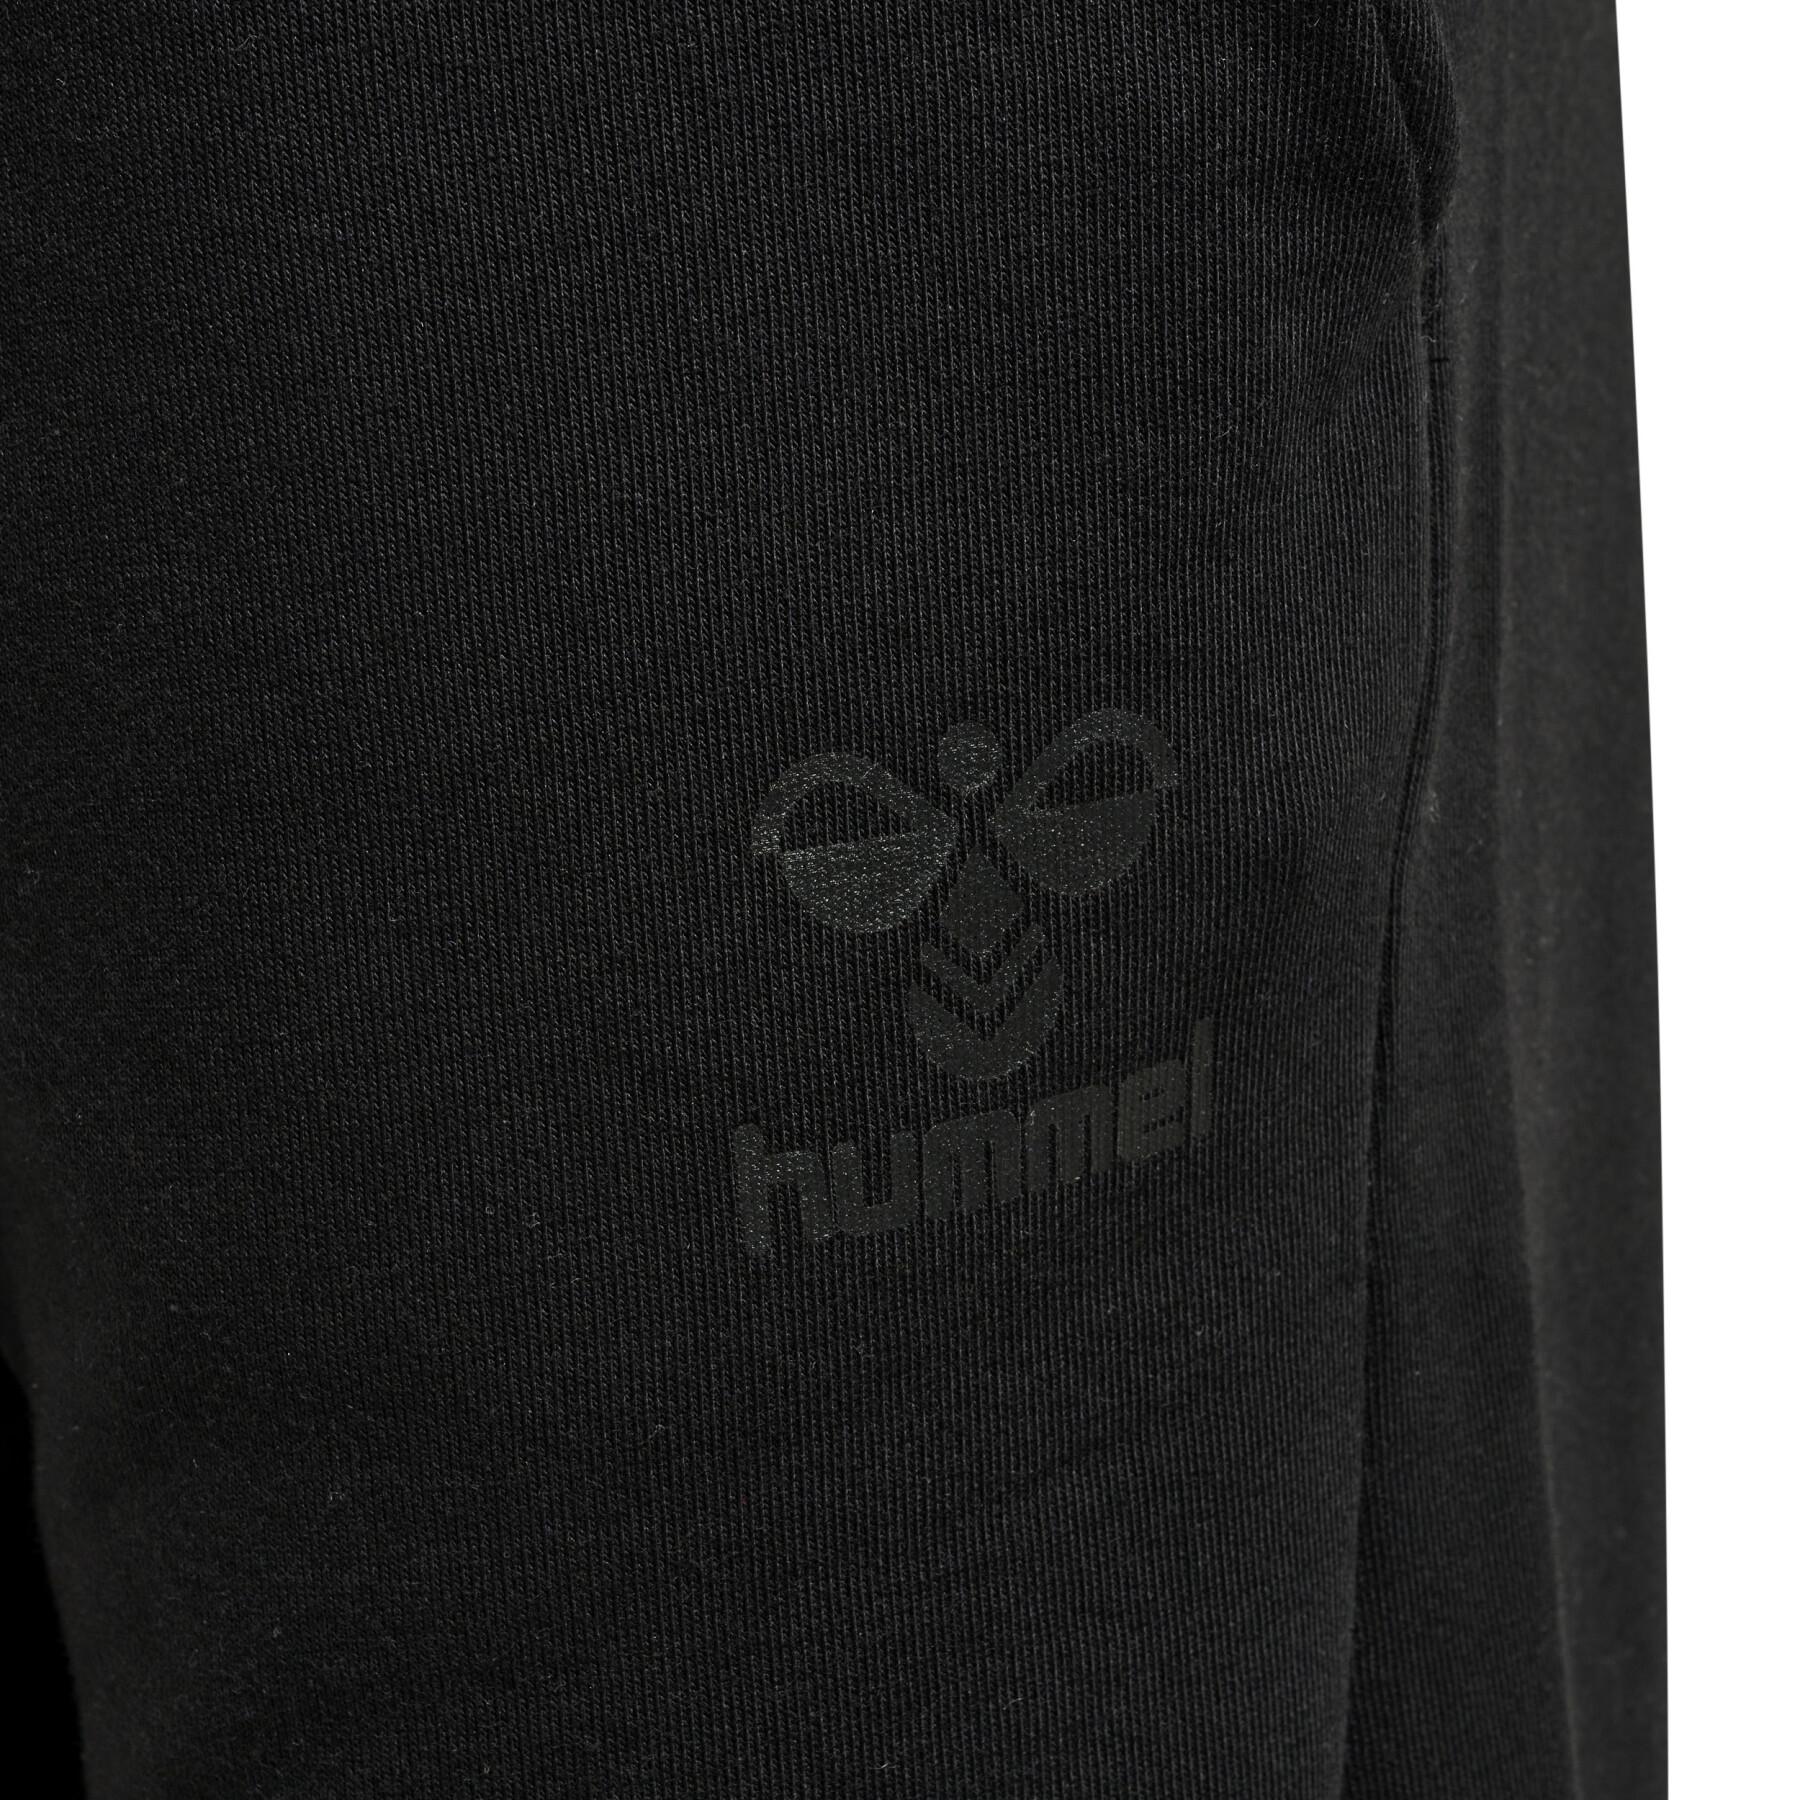 Jogging Hummel S.A.M. 2.0